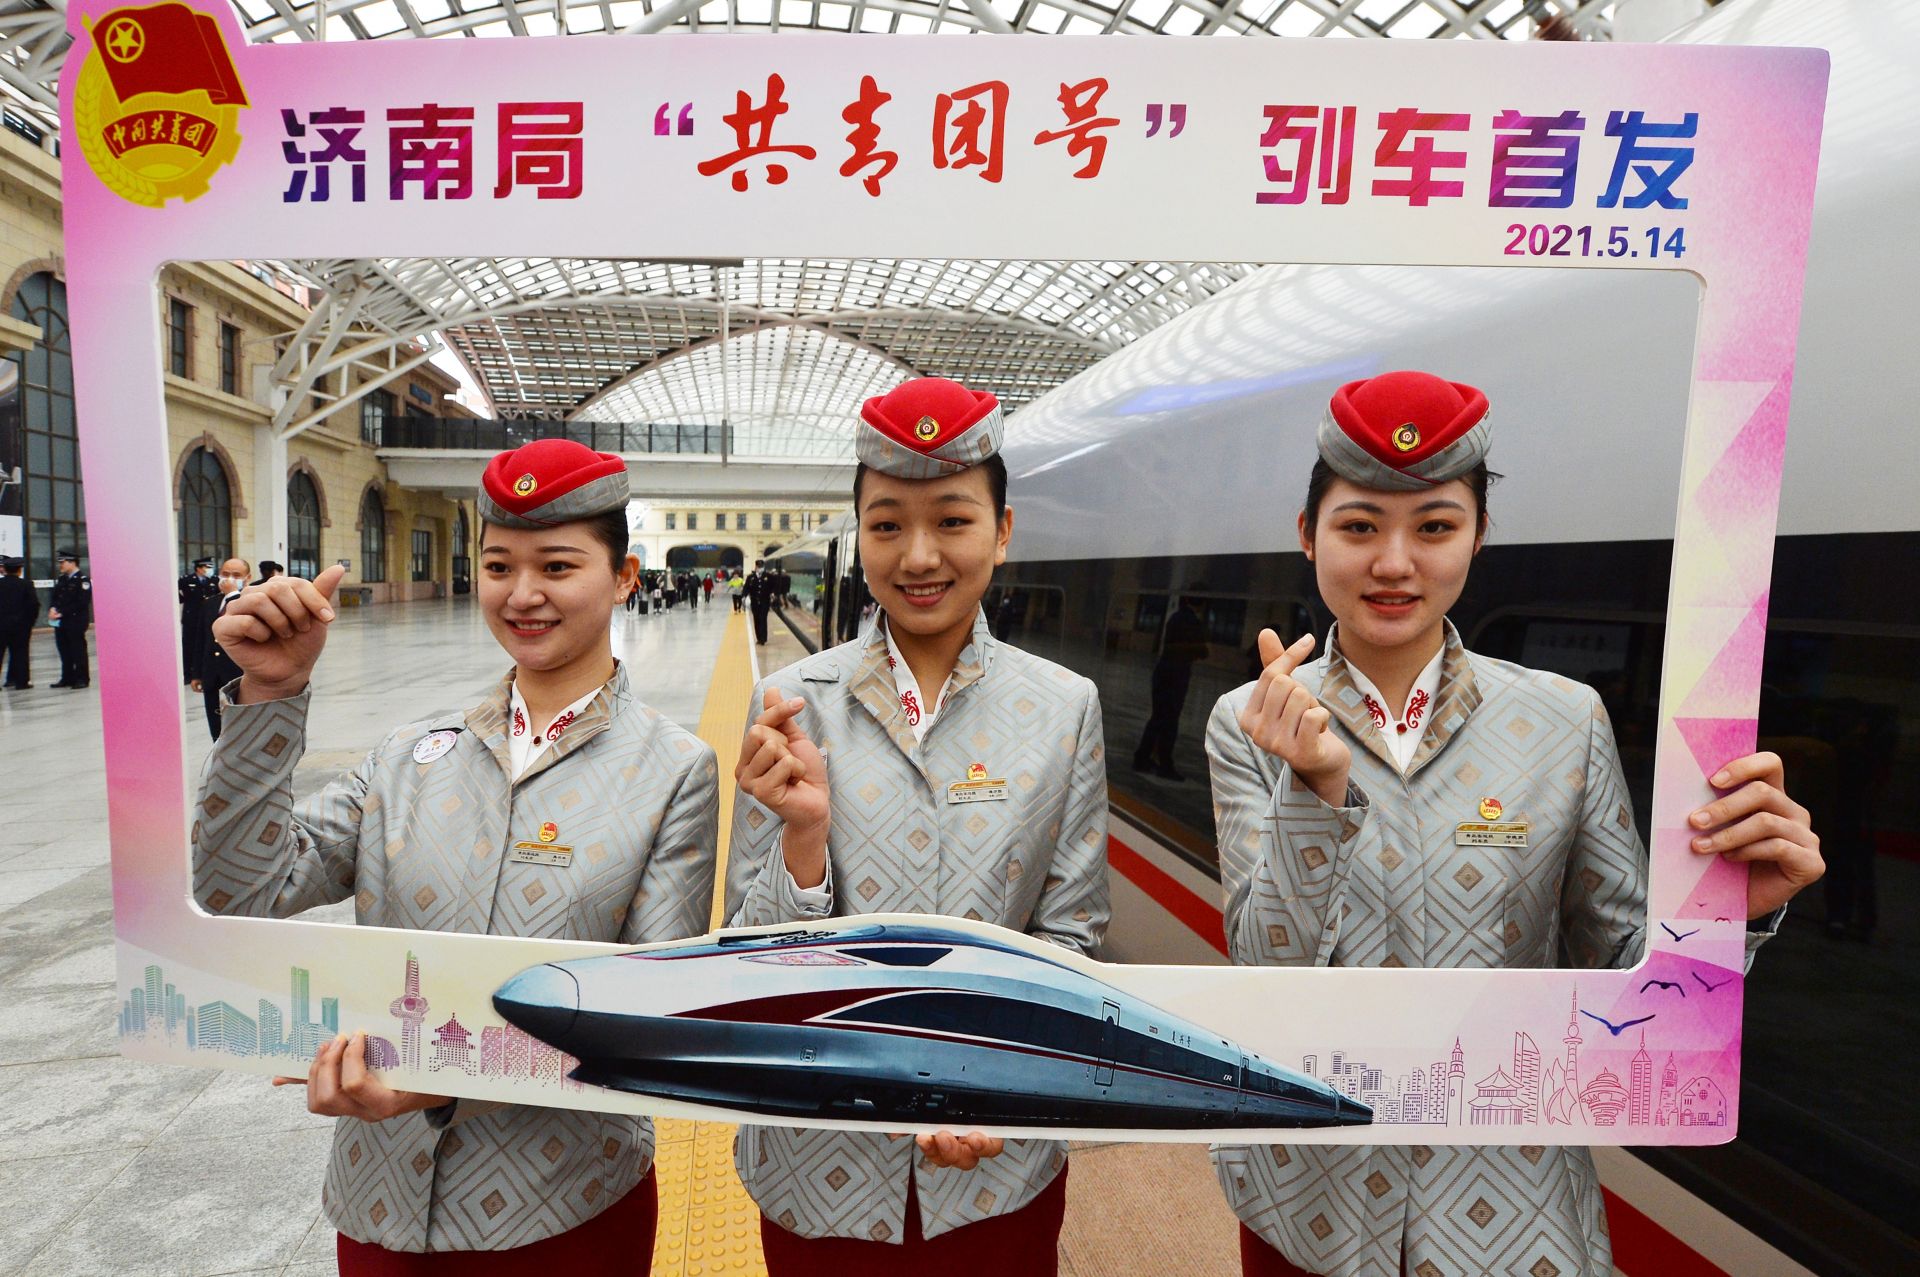 复兴CR400BF-C——北京2022年冬奥会列车，体现奥林匹克精神~ - 普象网